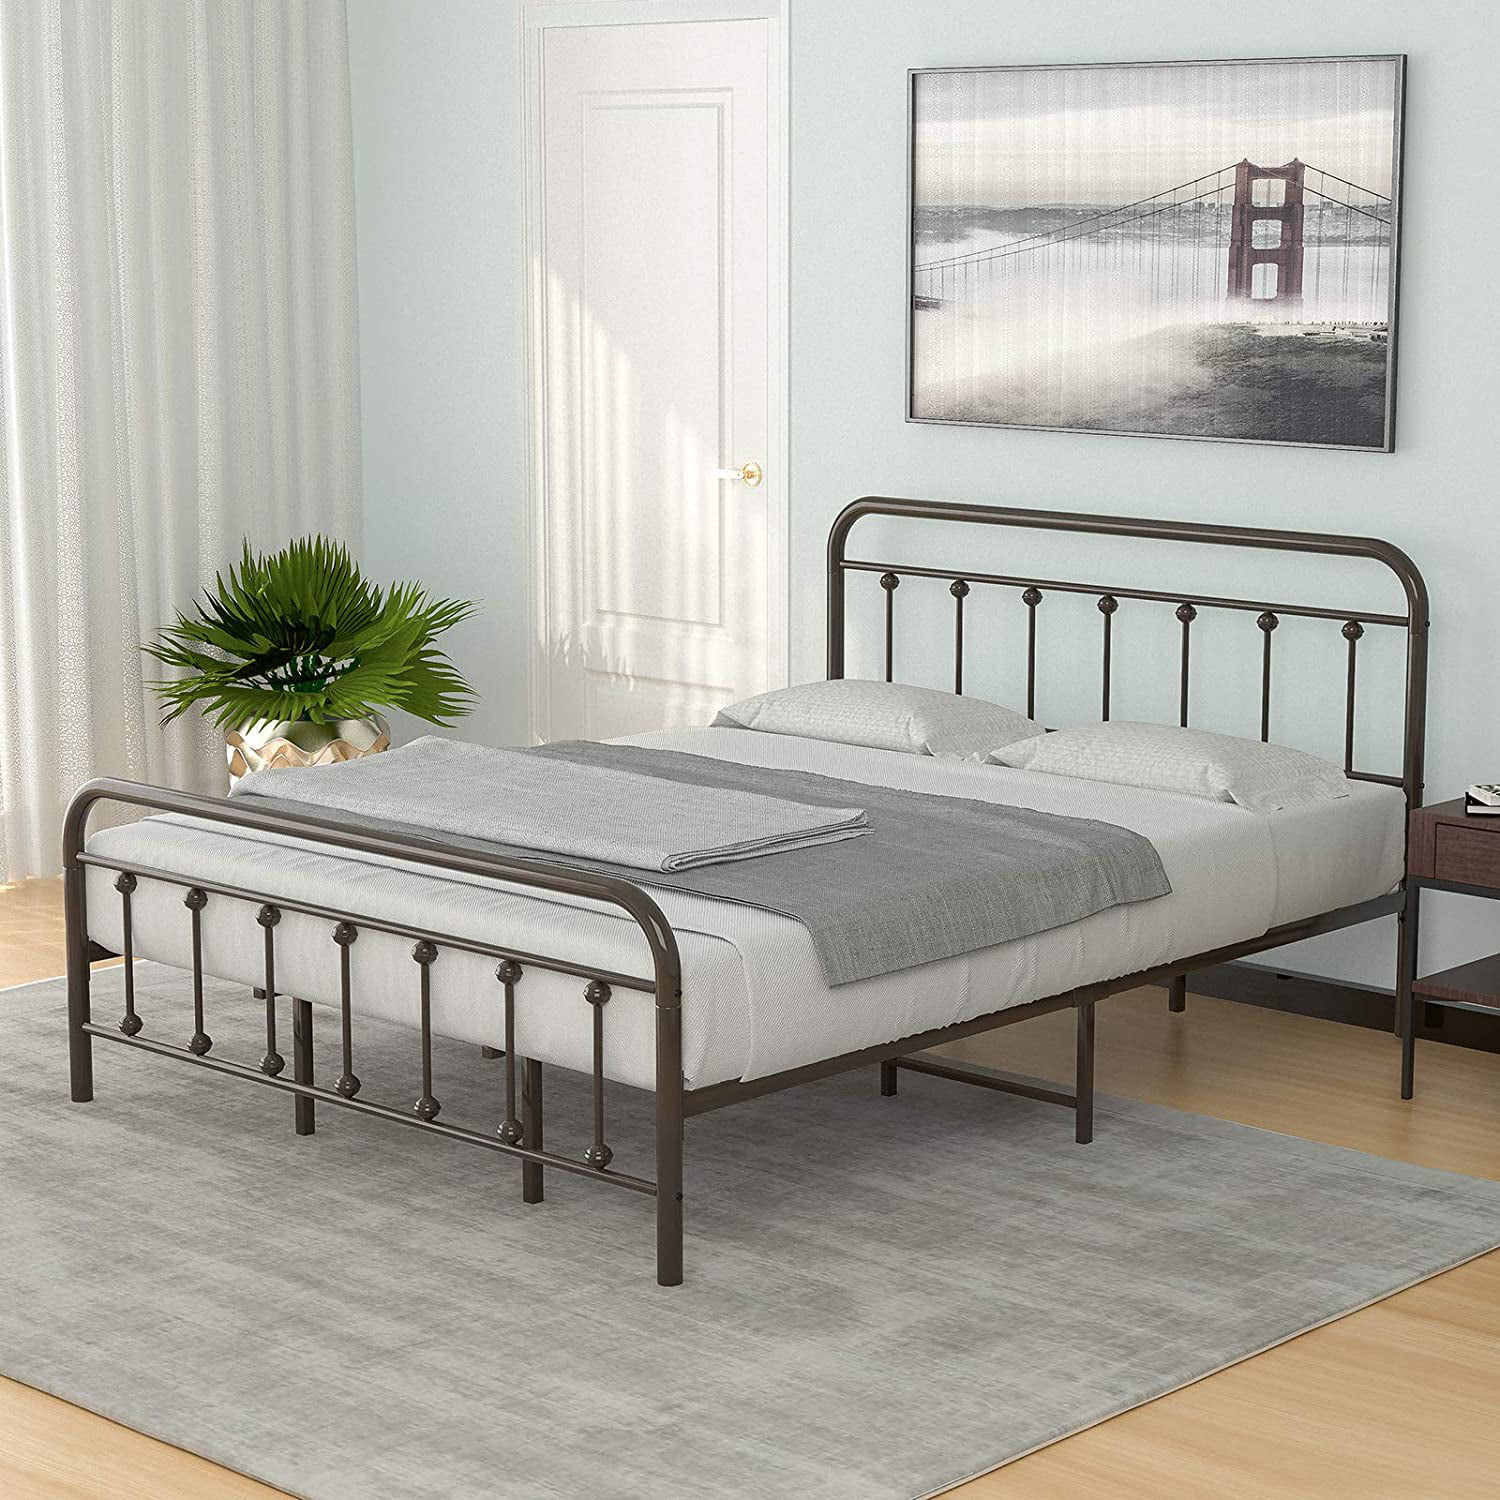 Mecor King Size Metal Platform Bed, Metal Bed Rails For King Size Bed